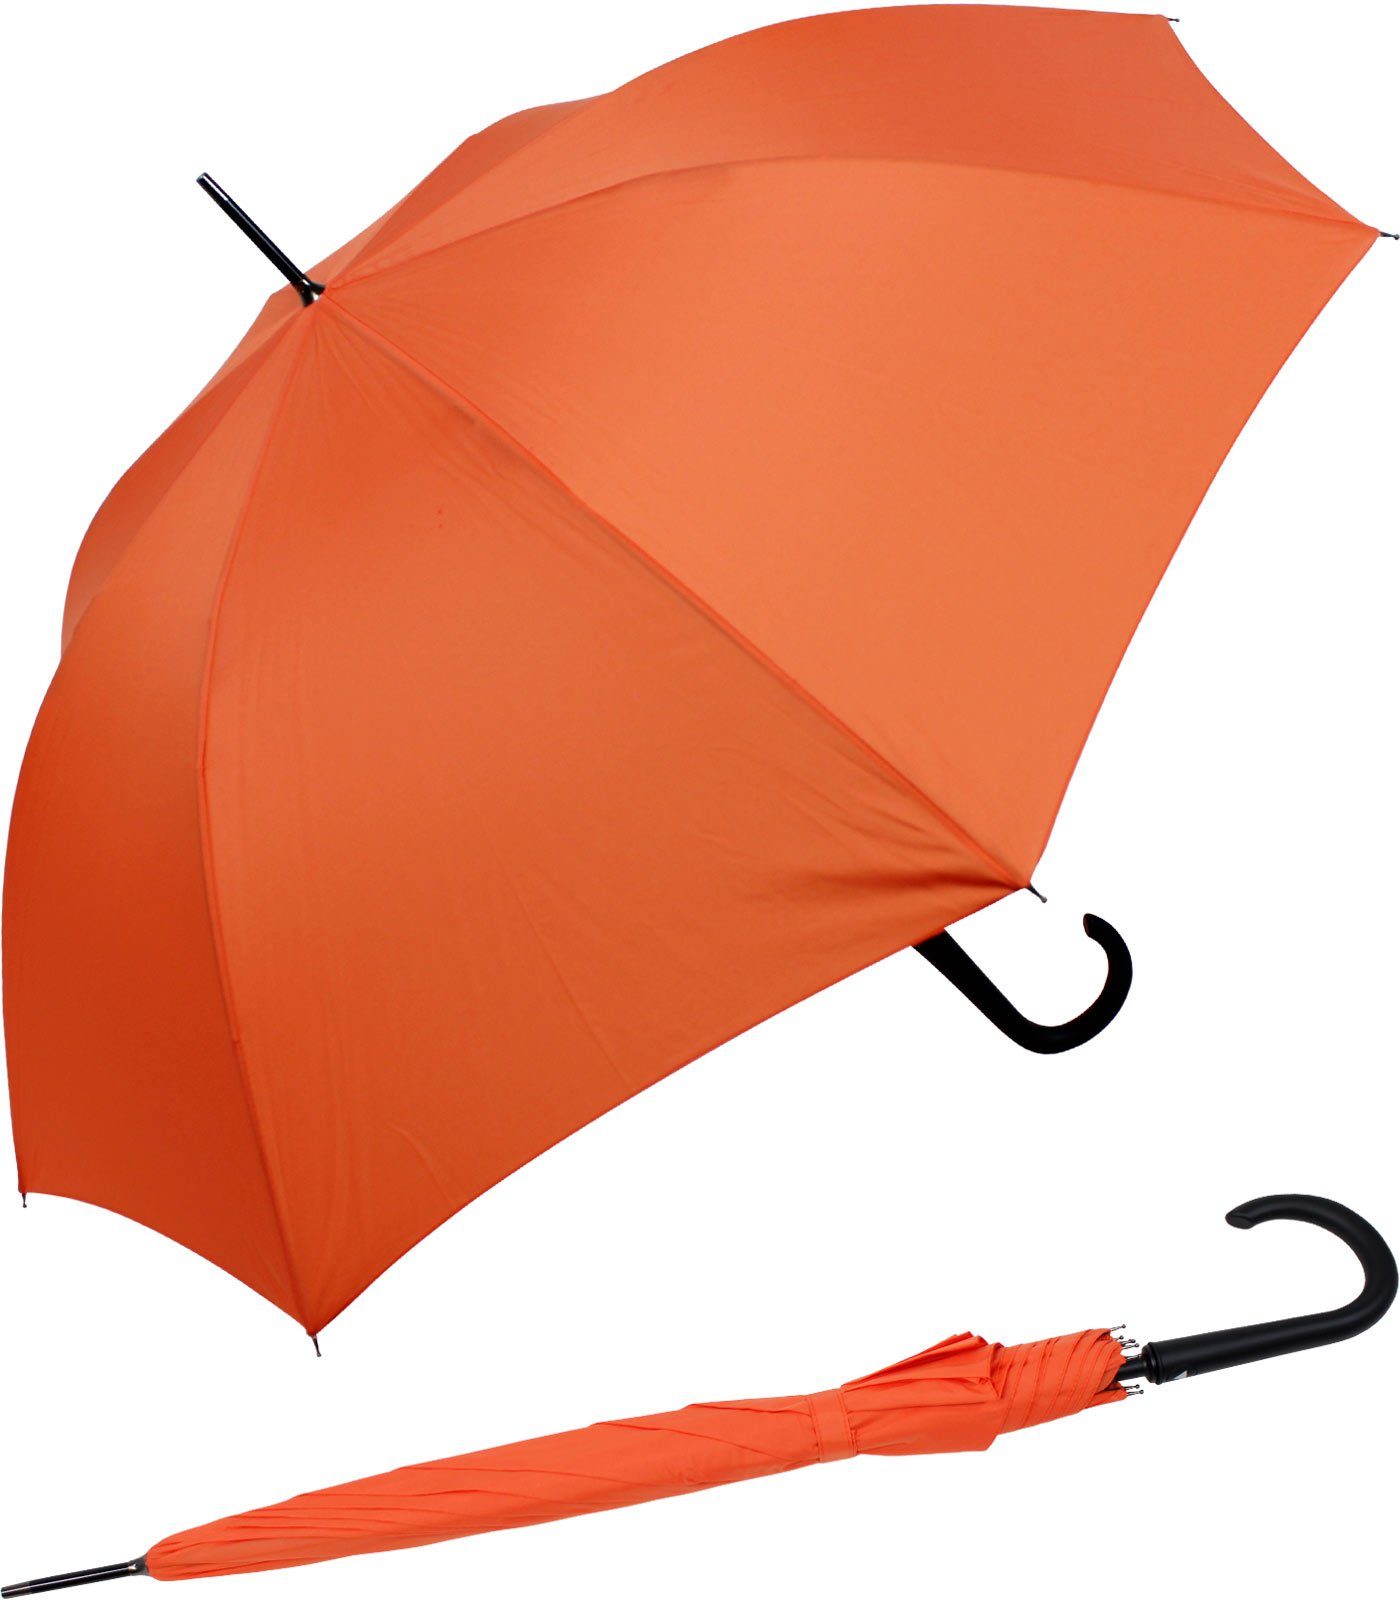 RS-Versand Langregenschirm großer stabiler Regenschirm mit Auf-Automatik, Stahl-Fiberglas-Gestell, integrierter Auslöseknopf orange